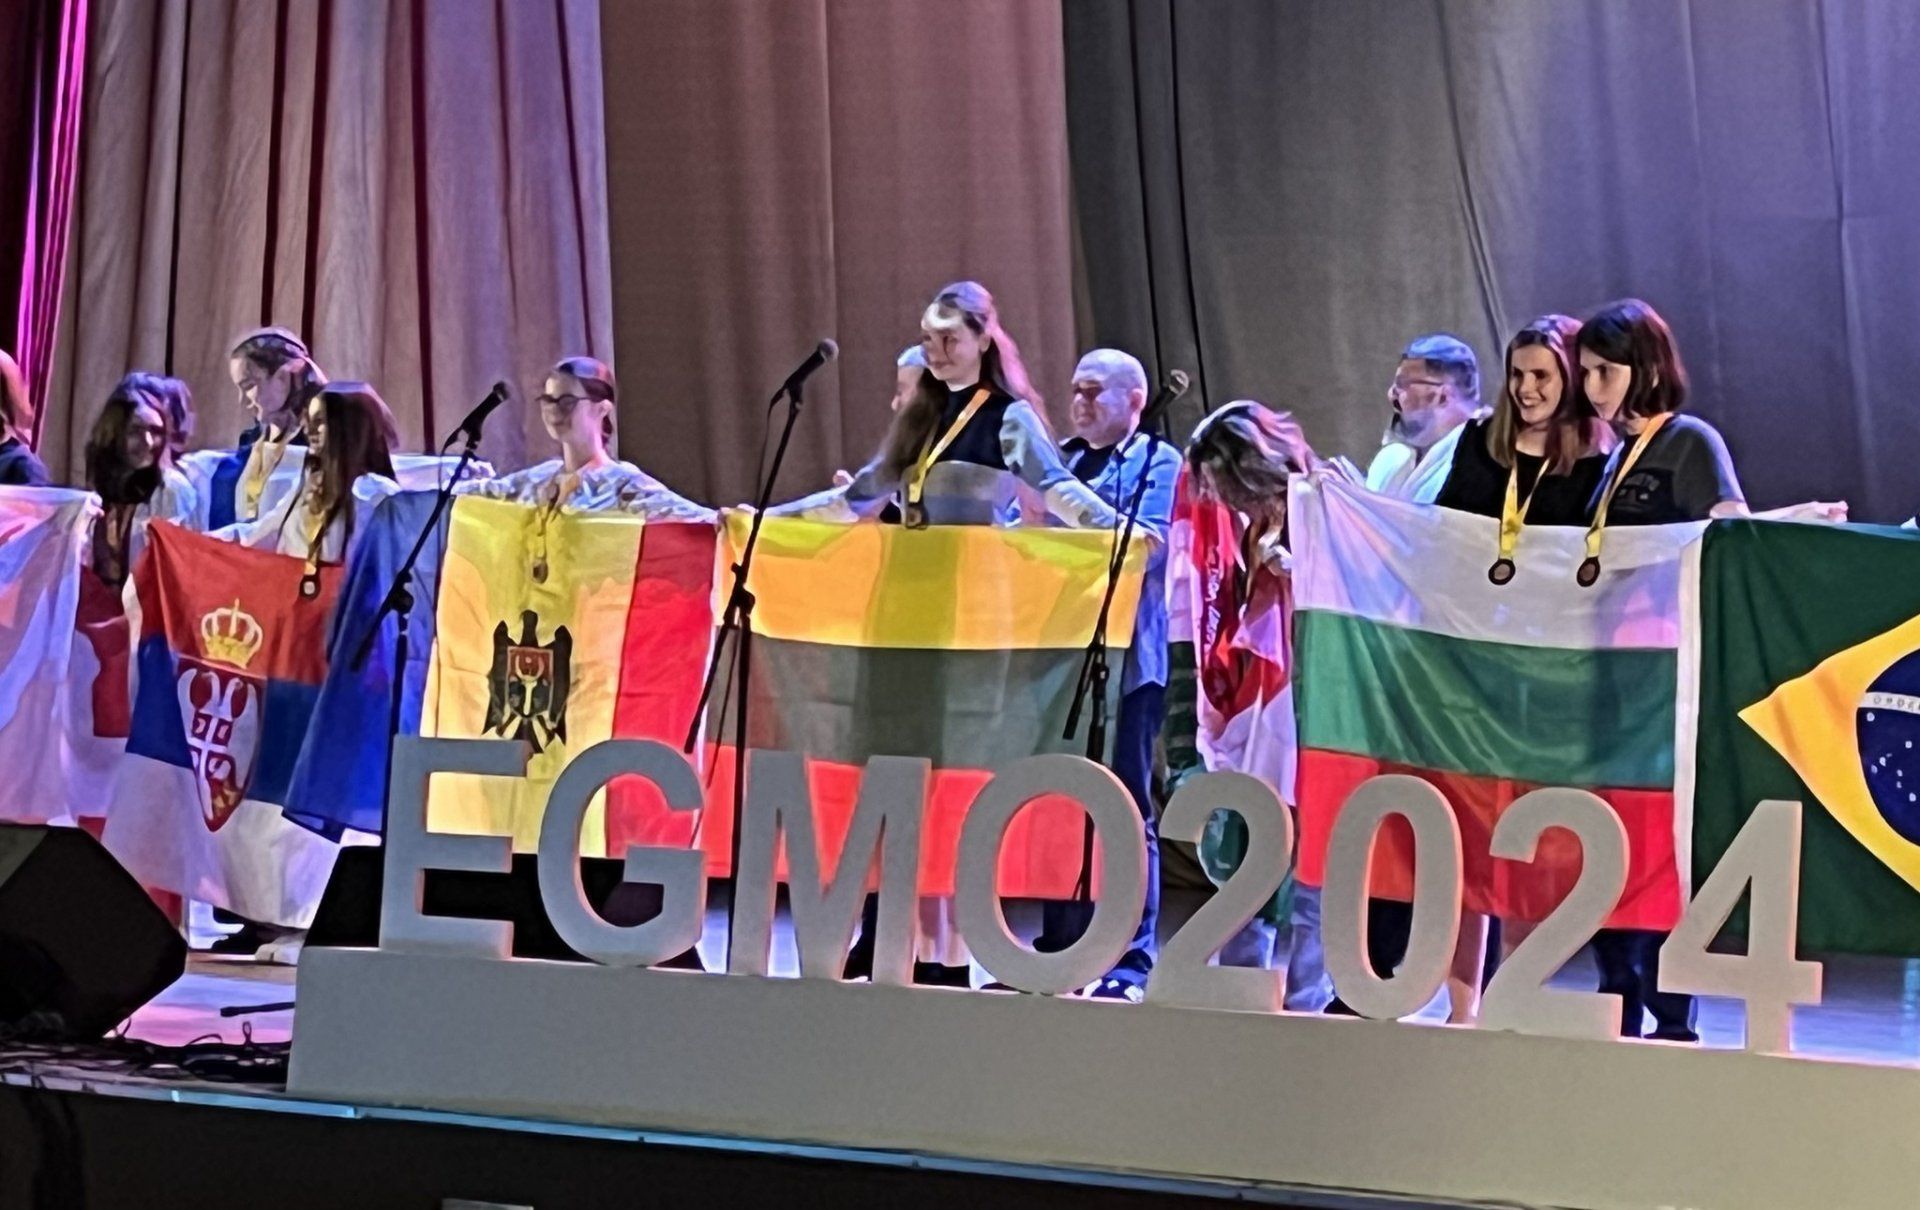 Moldova a obținut o medalie de bronz și o mențiune de onoare la Olimpiada Europeană de Matematică pentru Fete